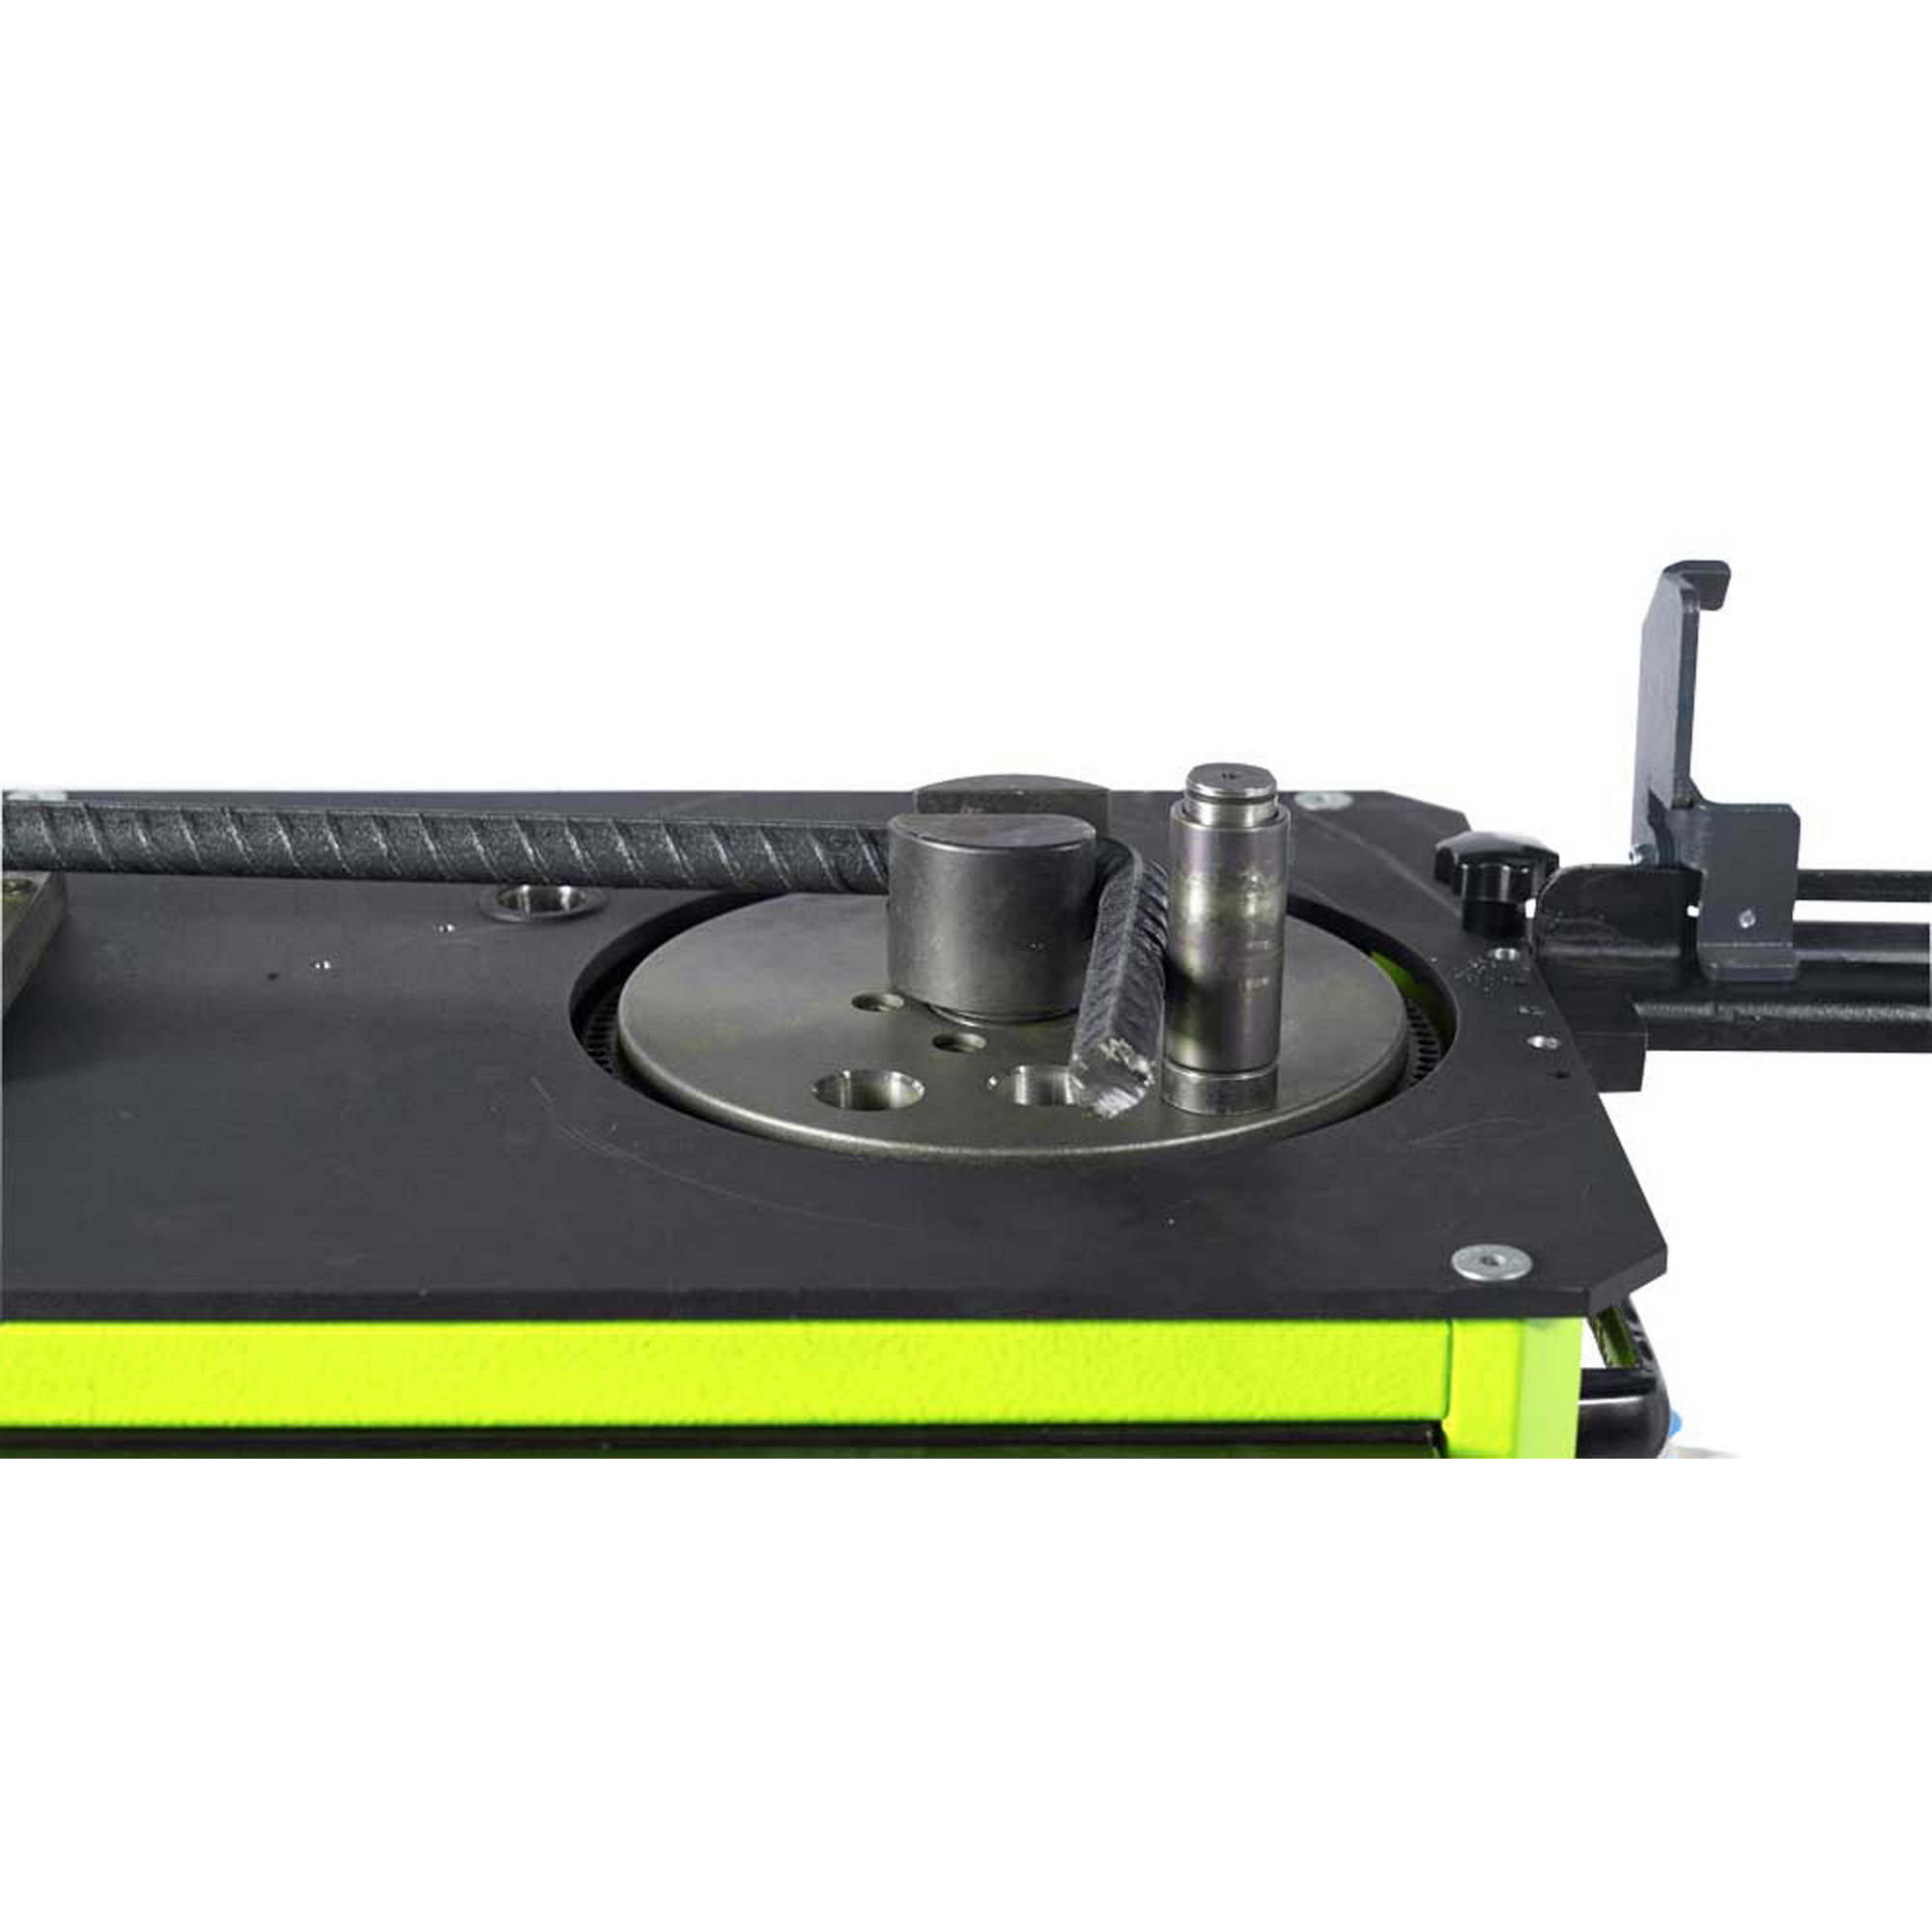 Betonstahl-Biegemaschine grün 1500 W inklusive Zubehör + product picture